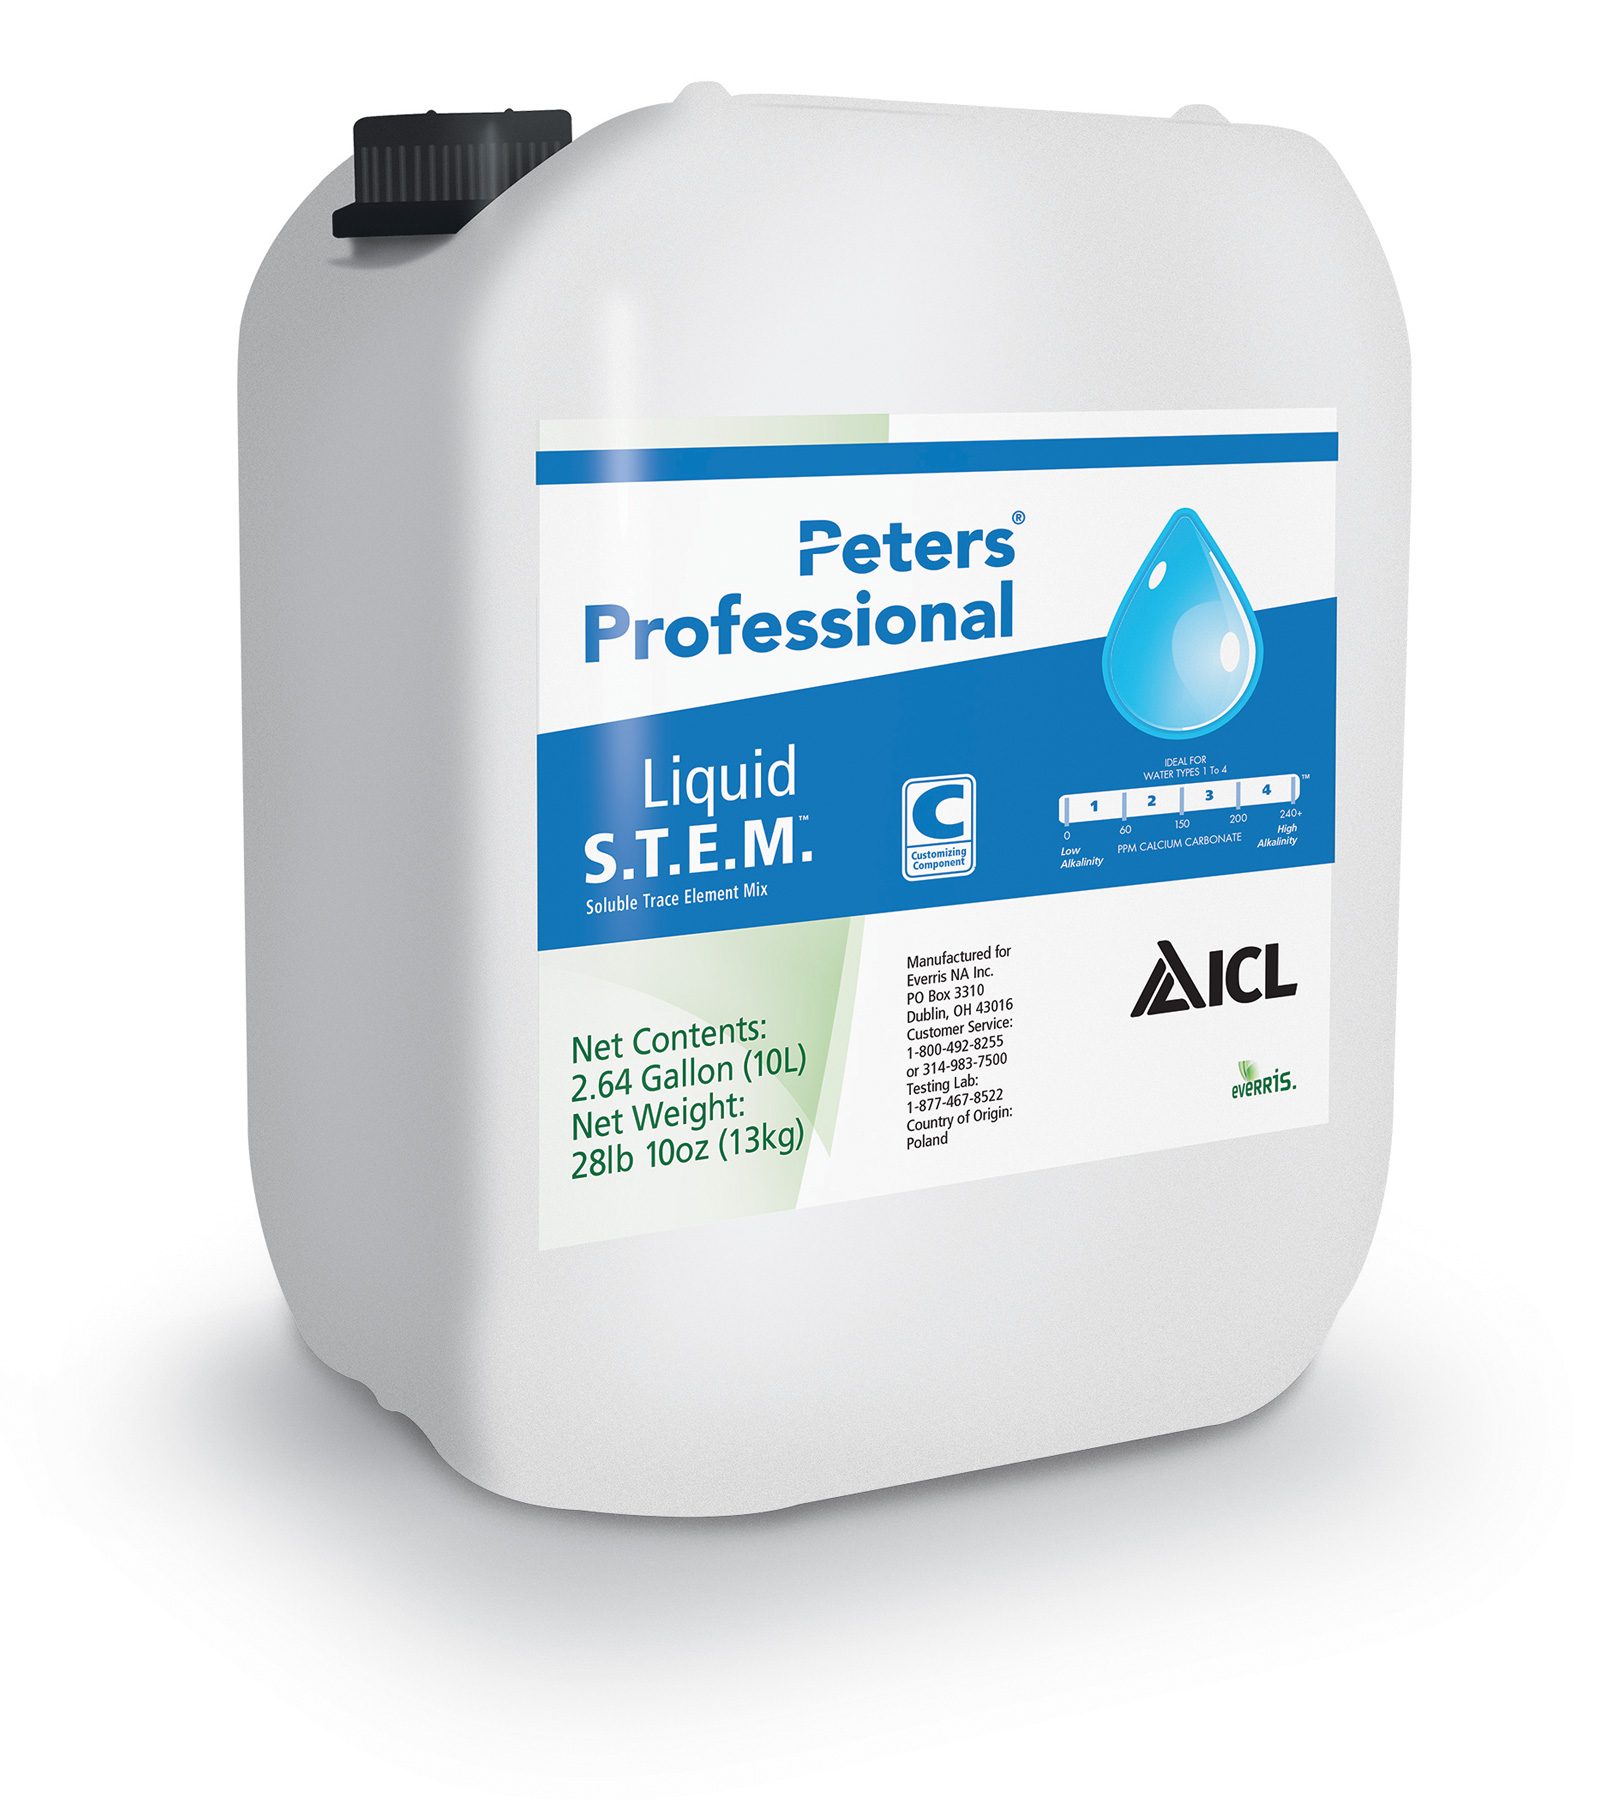 Peters Professional Liquid S.T.E.M. 2.64 Gallon Jug - Liquid Fertilizer